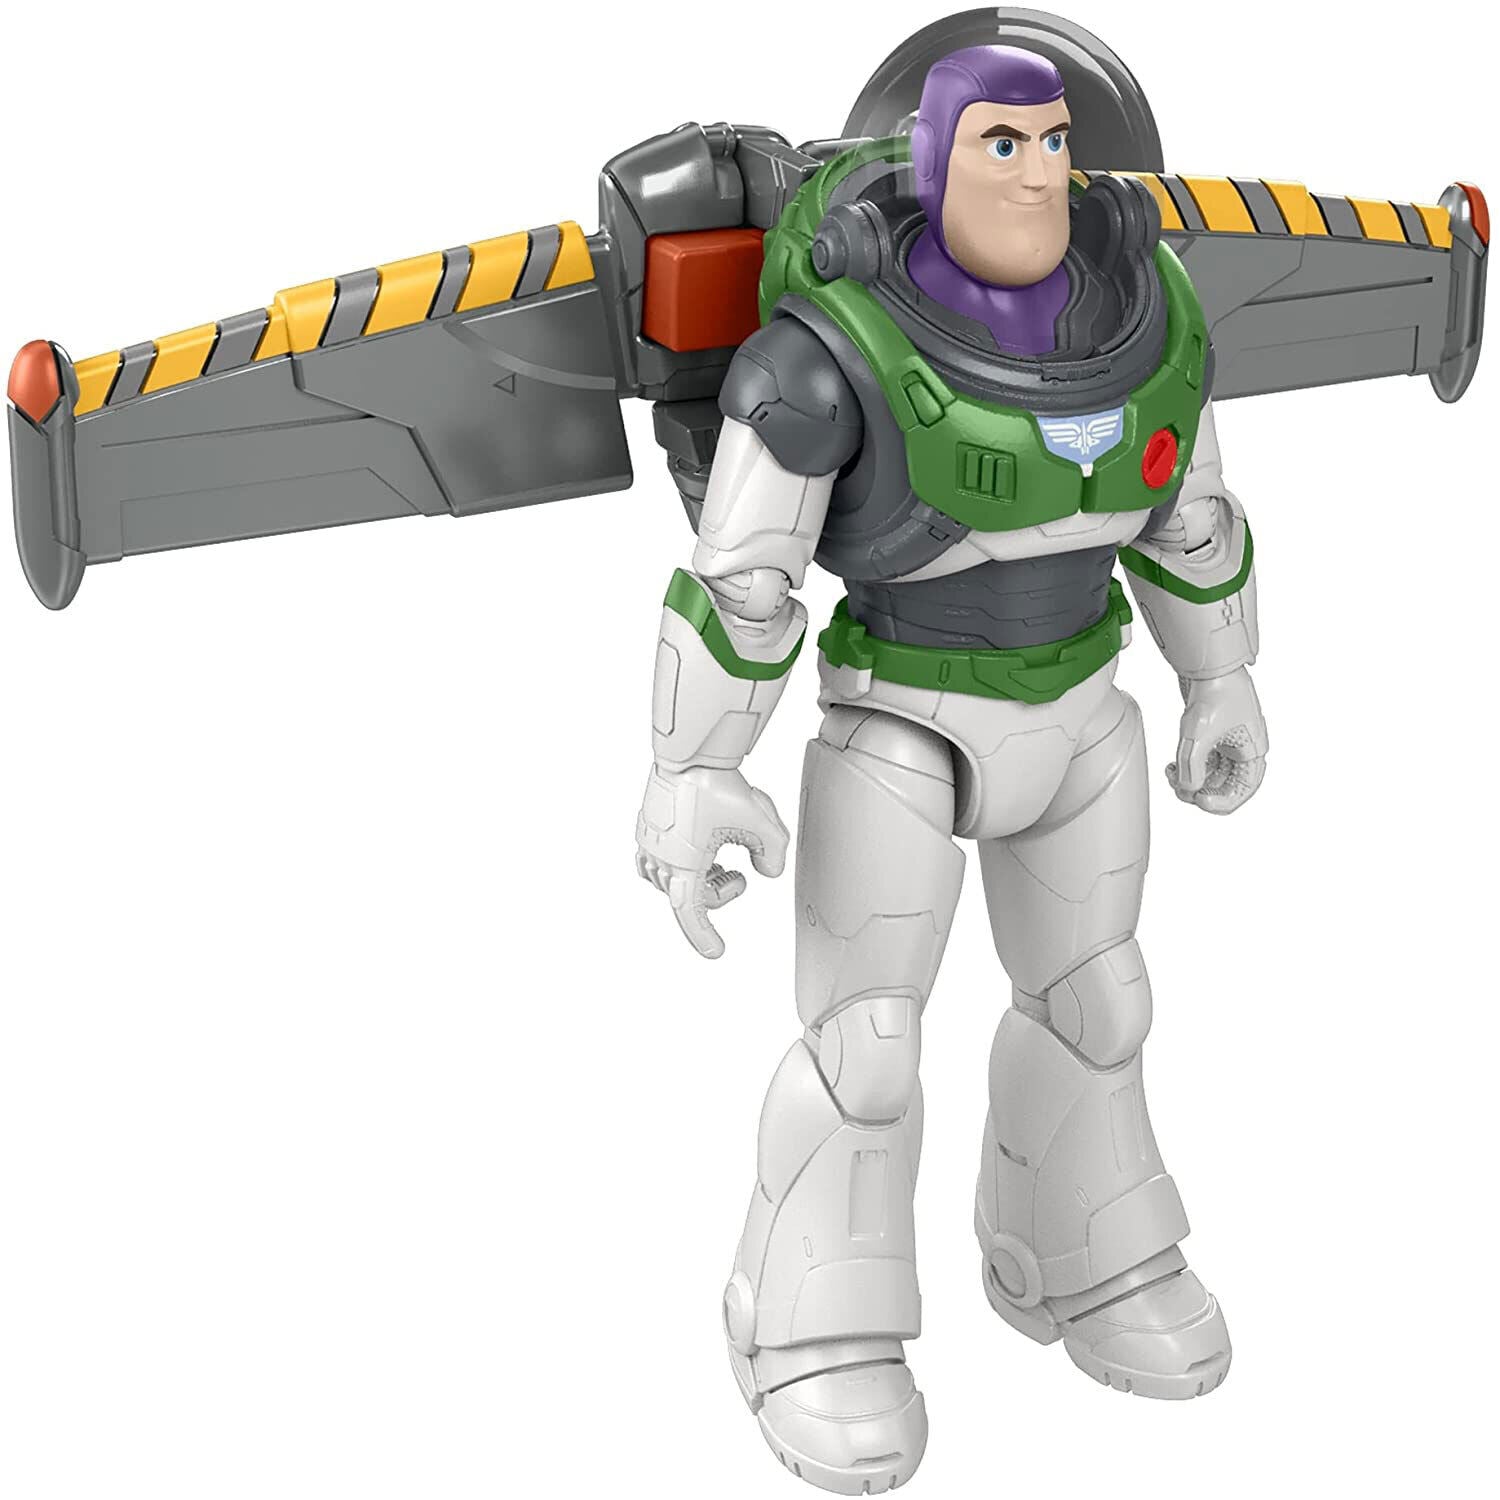 Disney Pixar Lightyear Blast & Battle XL-15 Spaceship Toy - New in Box!